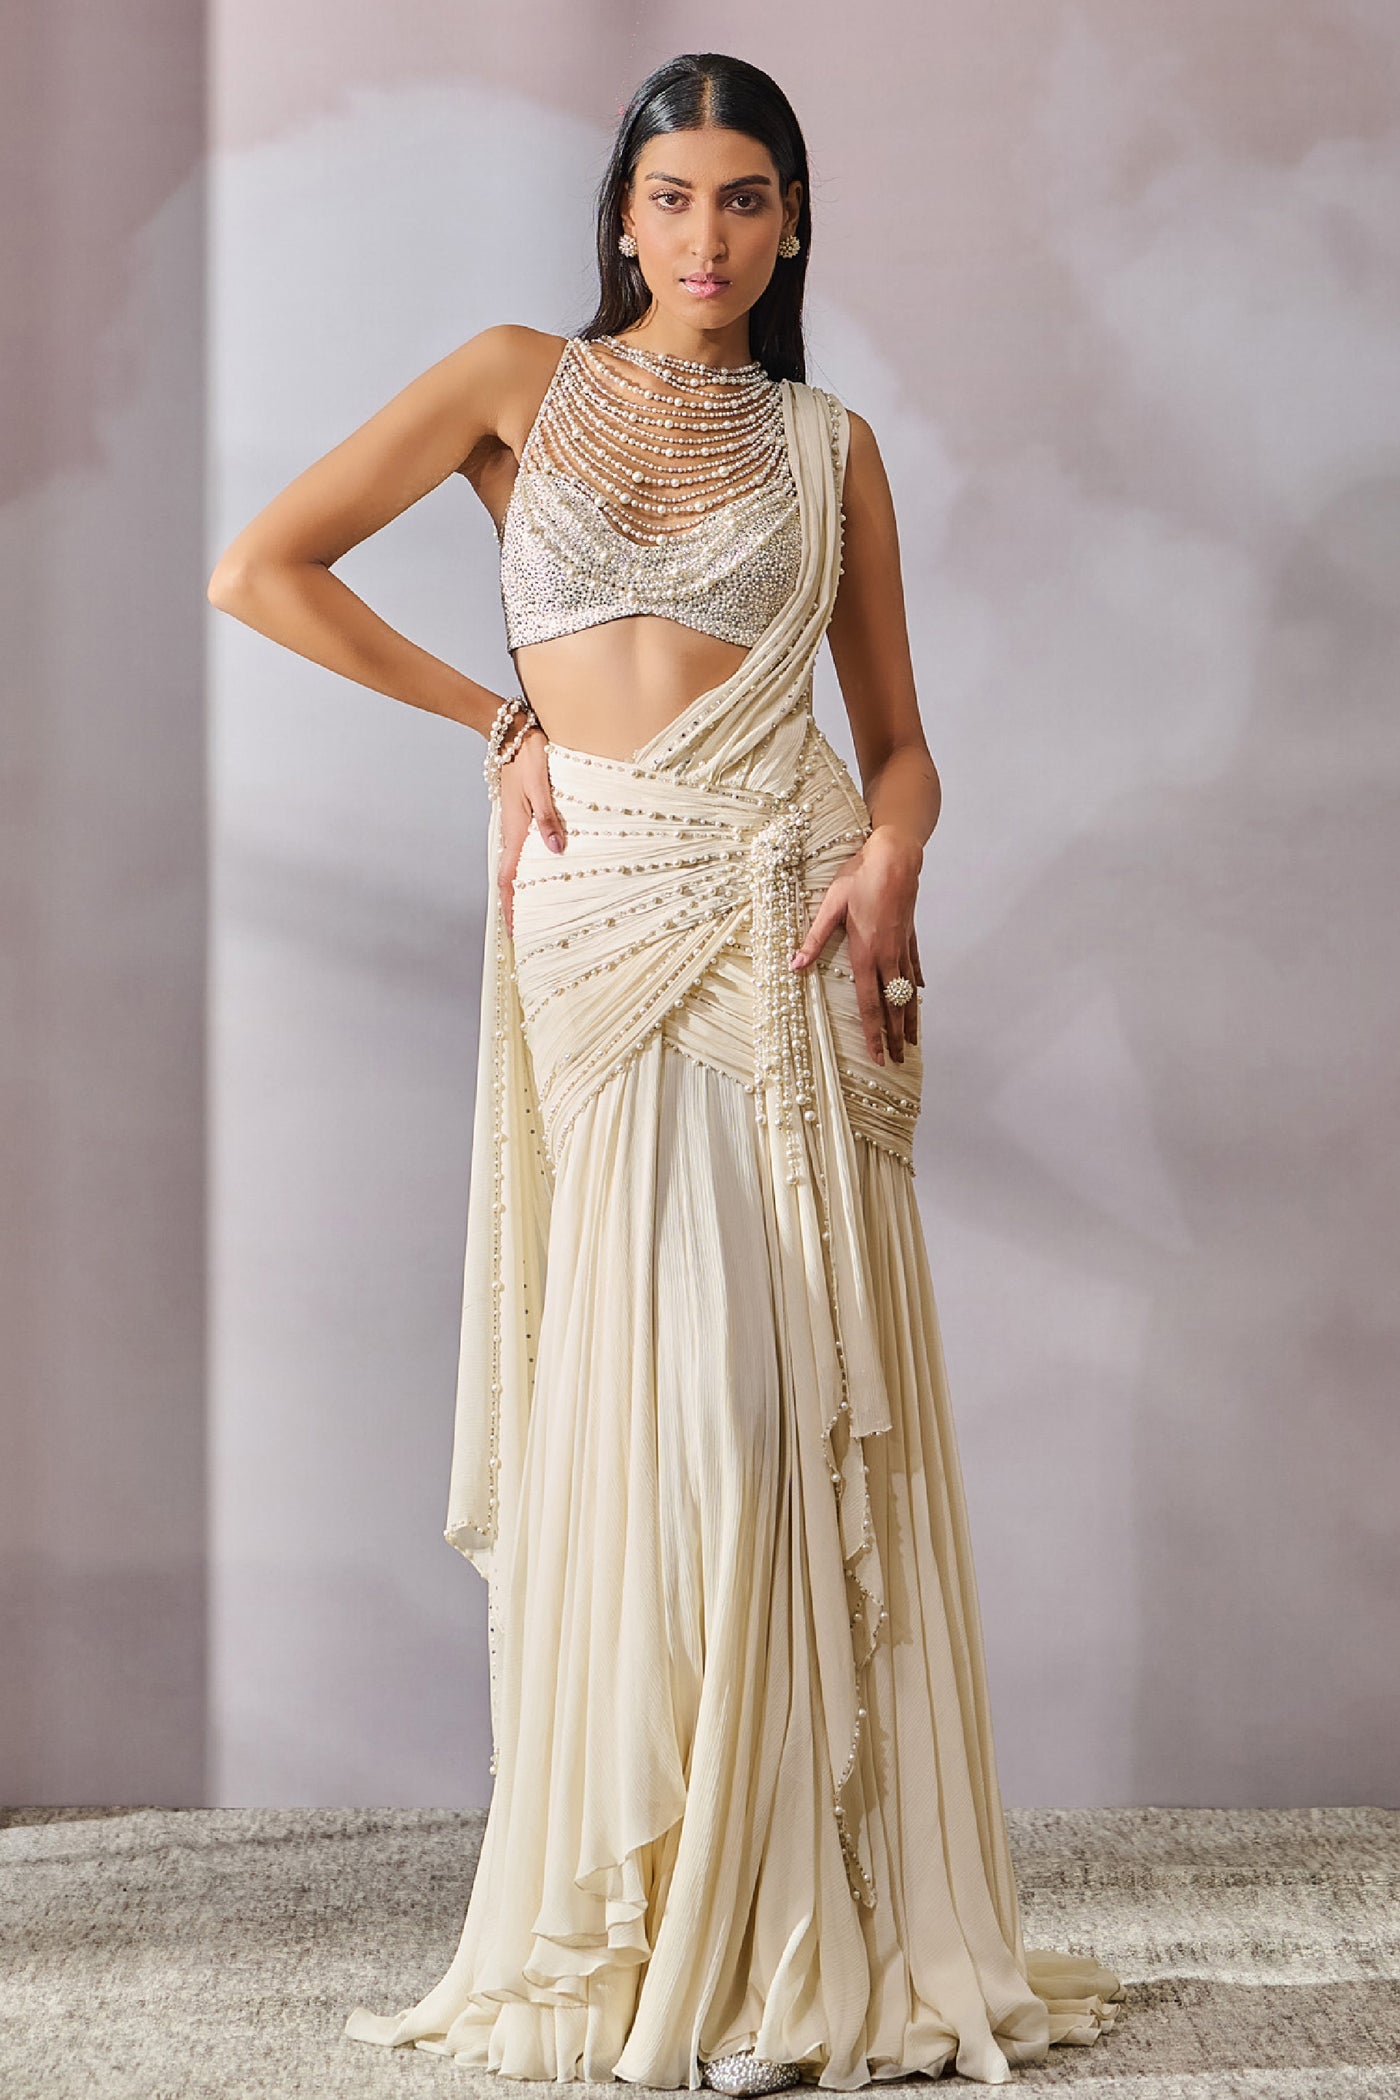 Tarun Tahiliani Blouse Concept Saree indian designer wear online shopping melange singapore